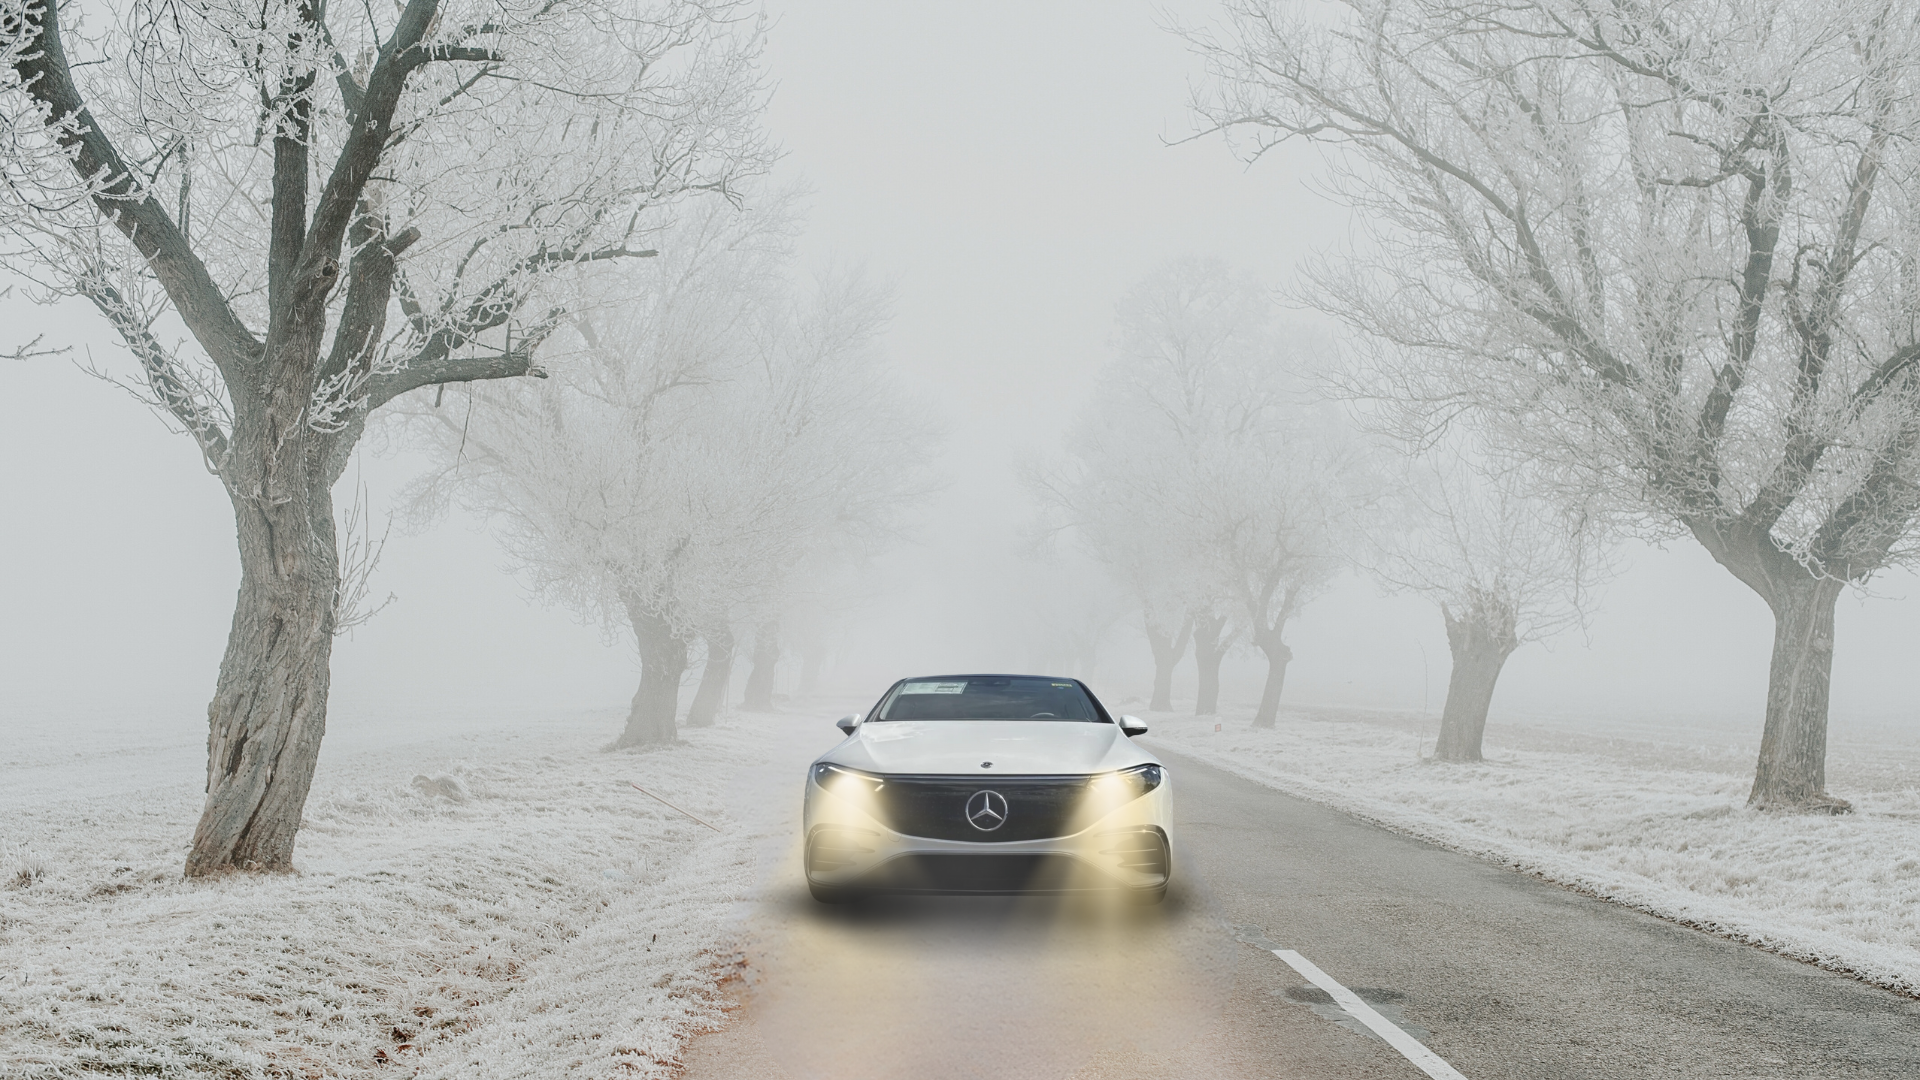 Mercedes EQS 450 sedan on a snowy road